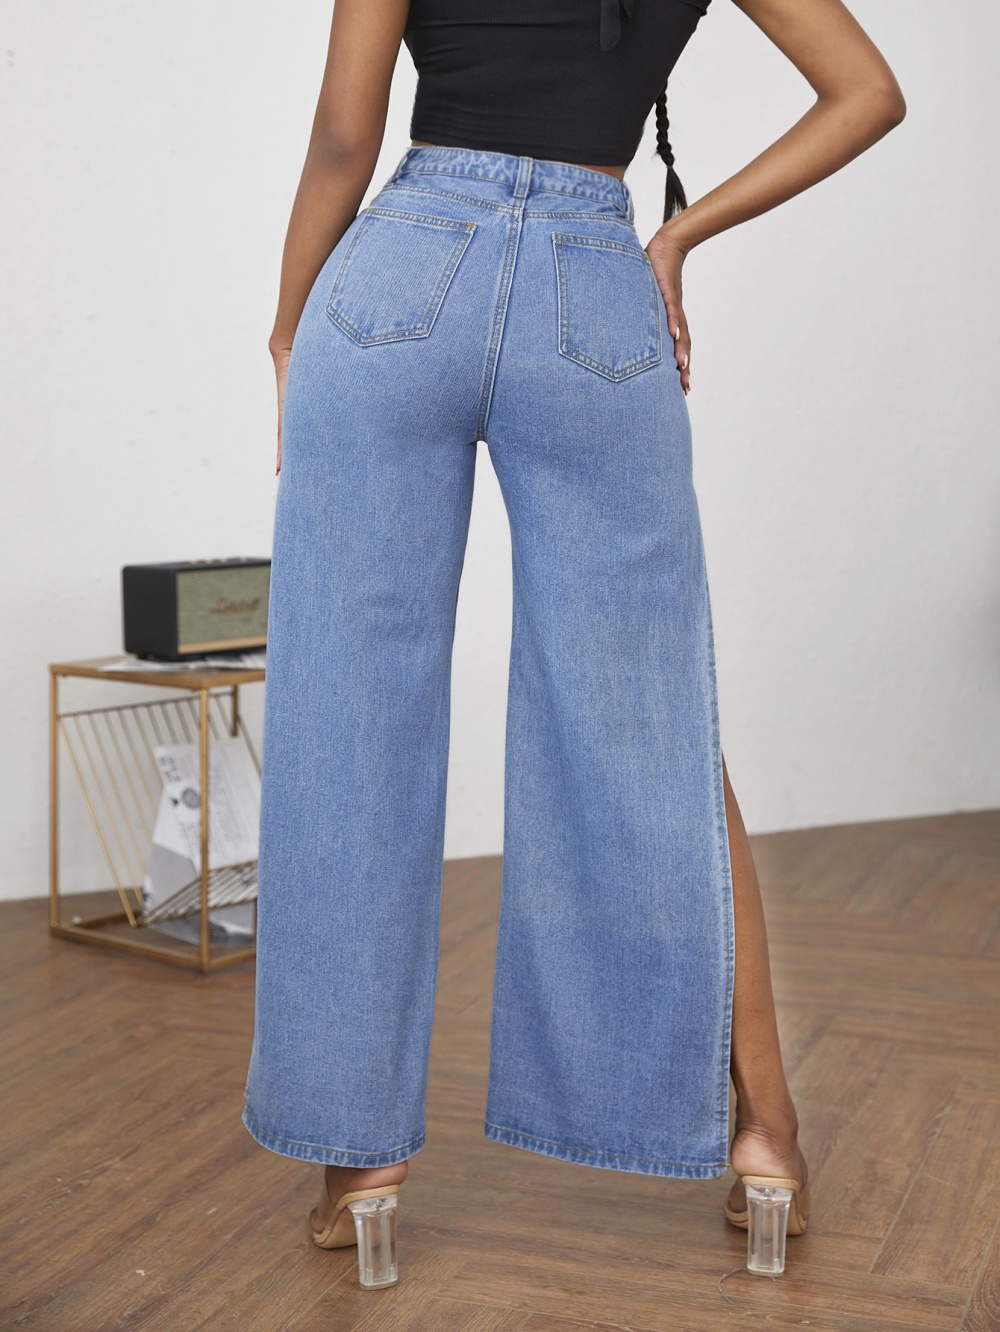 European style split fashion holes jeans